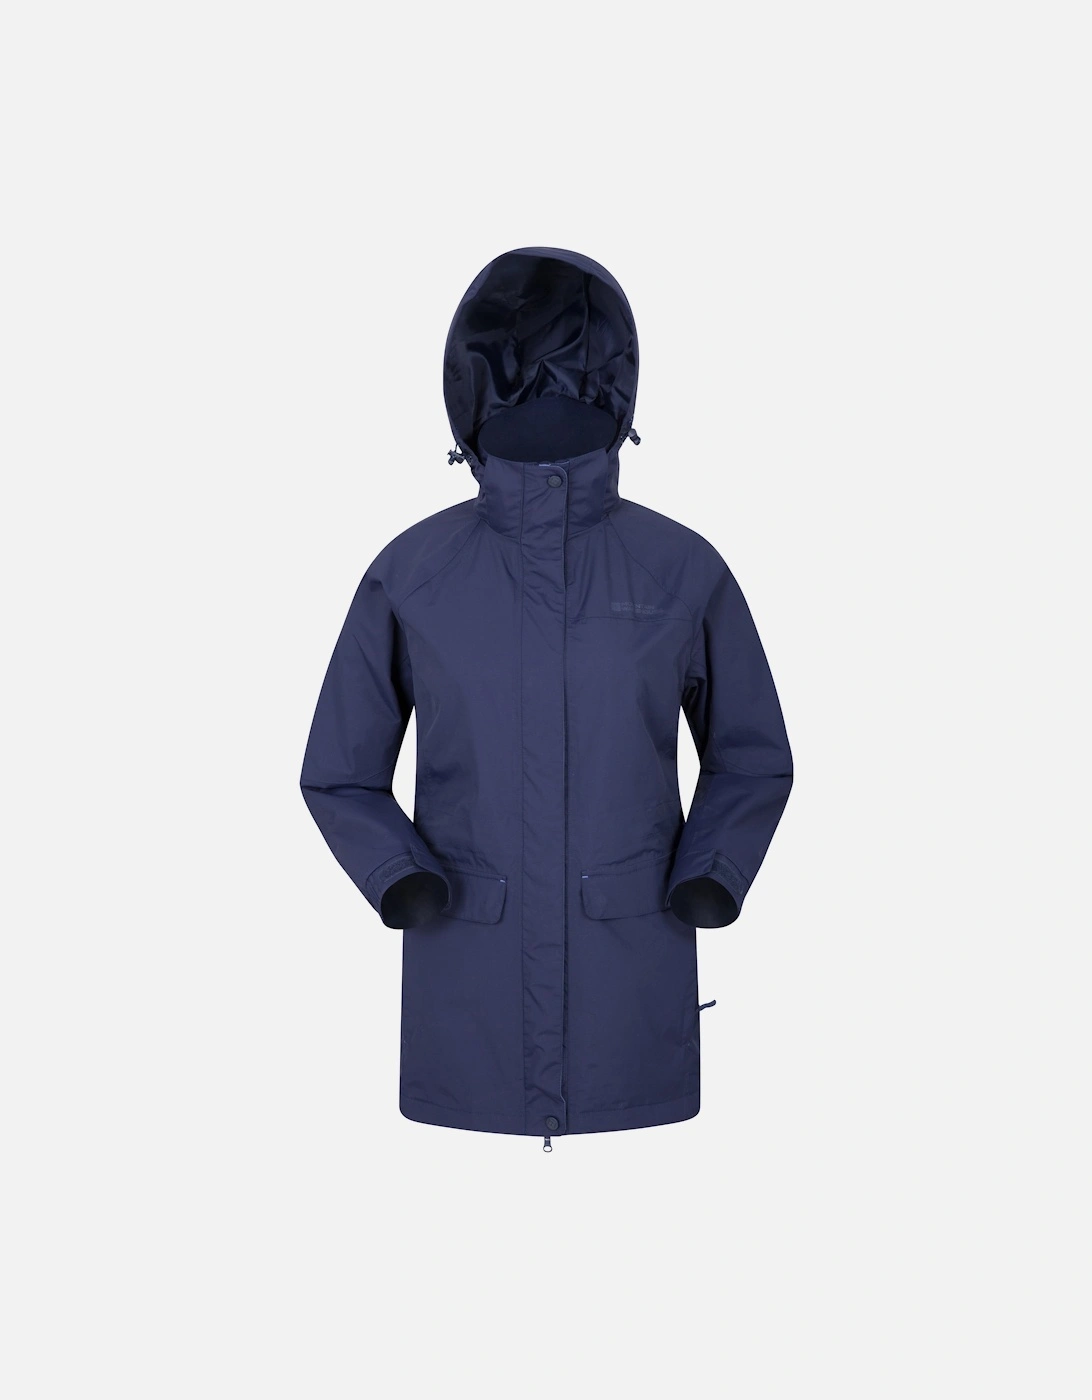 Womens/Ladies Glacial Extreme Waterproof Jacket, 6 of 5